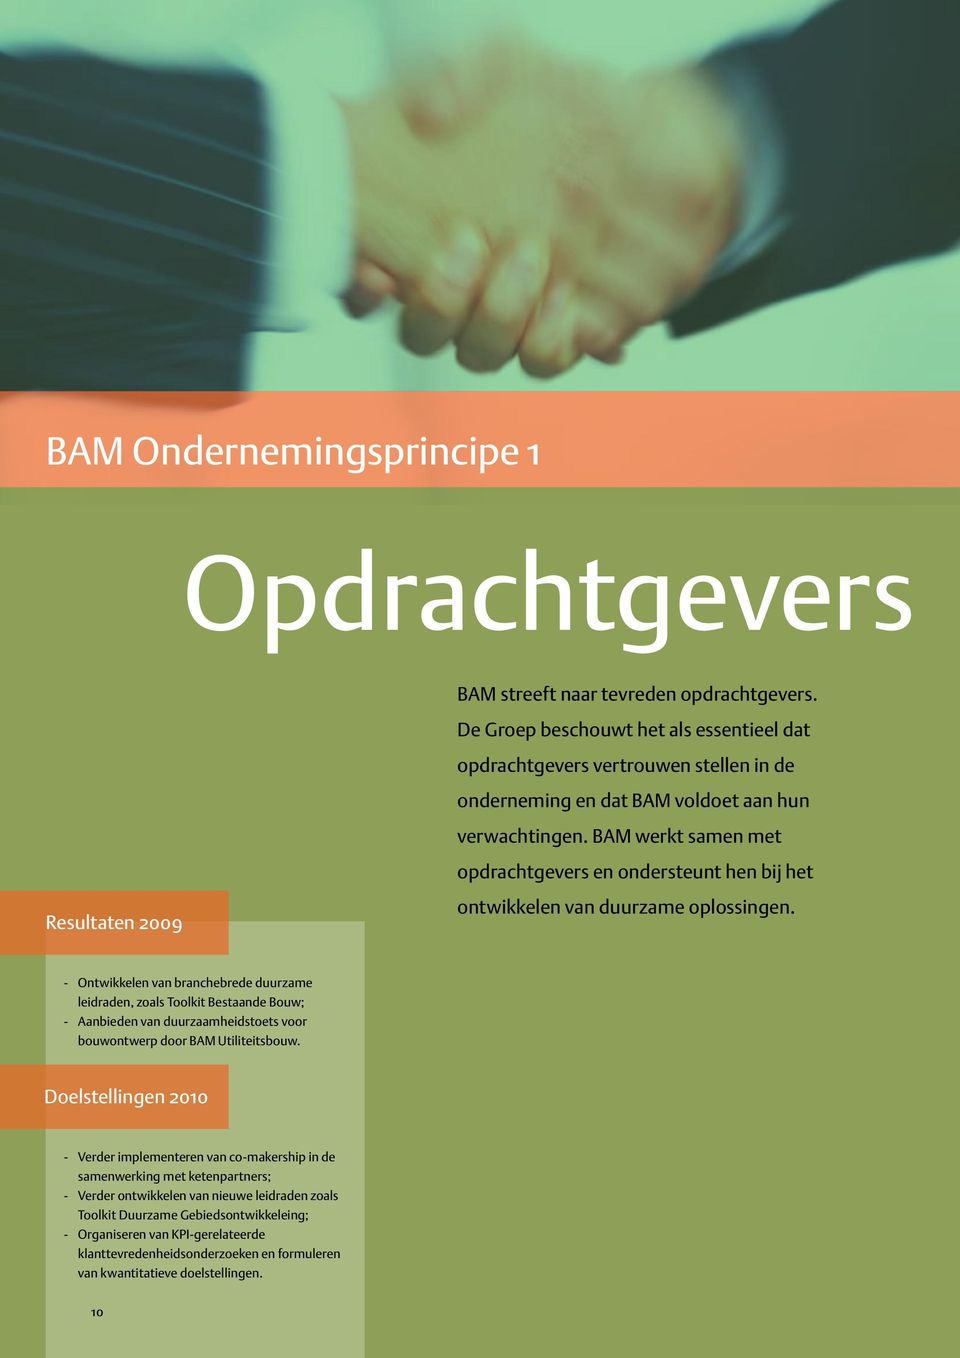 BAM werkt samen met opdrachtgevers en ondersteunt hen bij het Resultaten 2009 ontwikkelen van duurzame oplossingen.